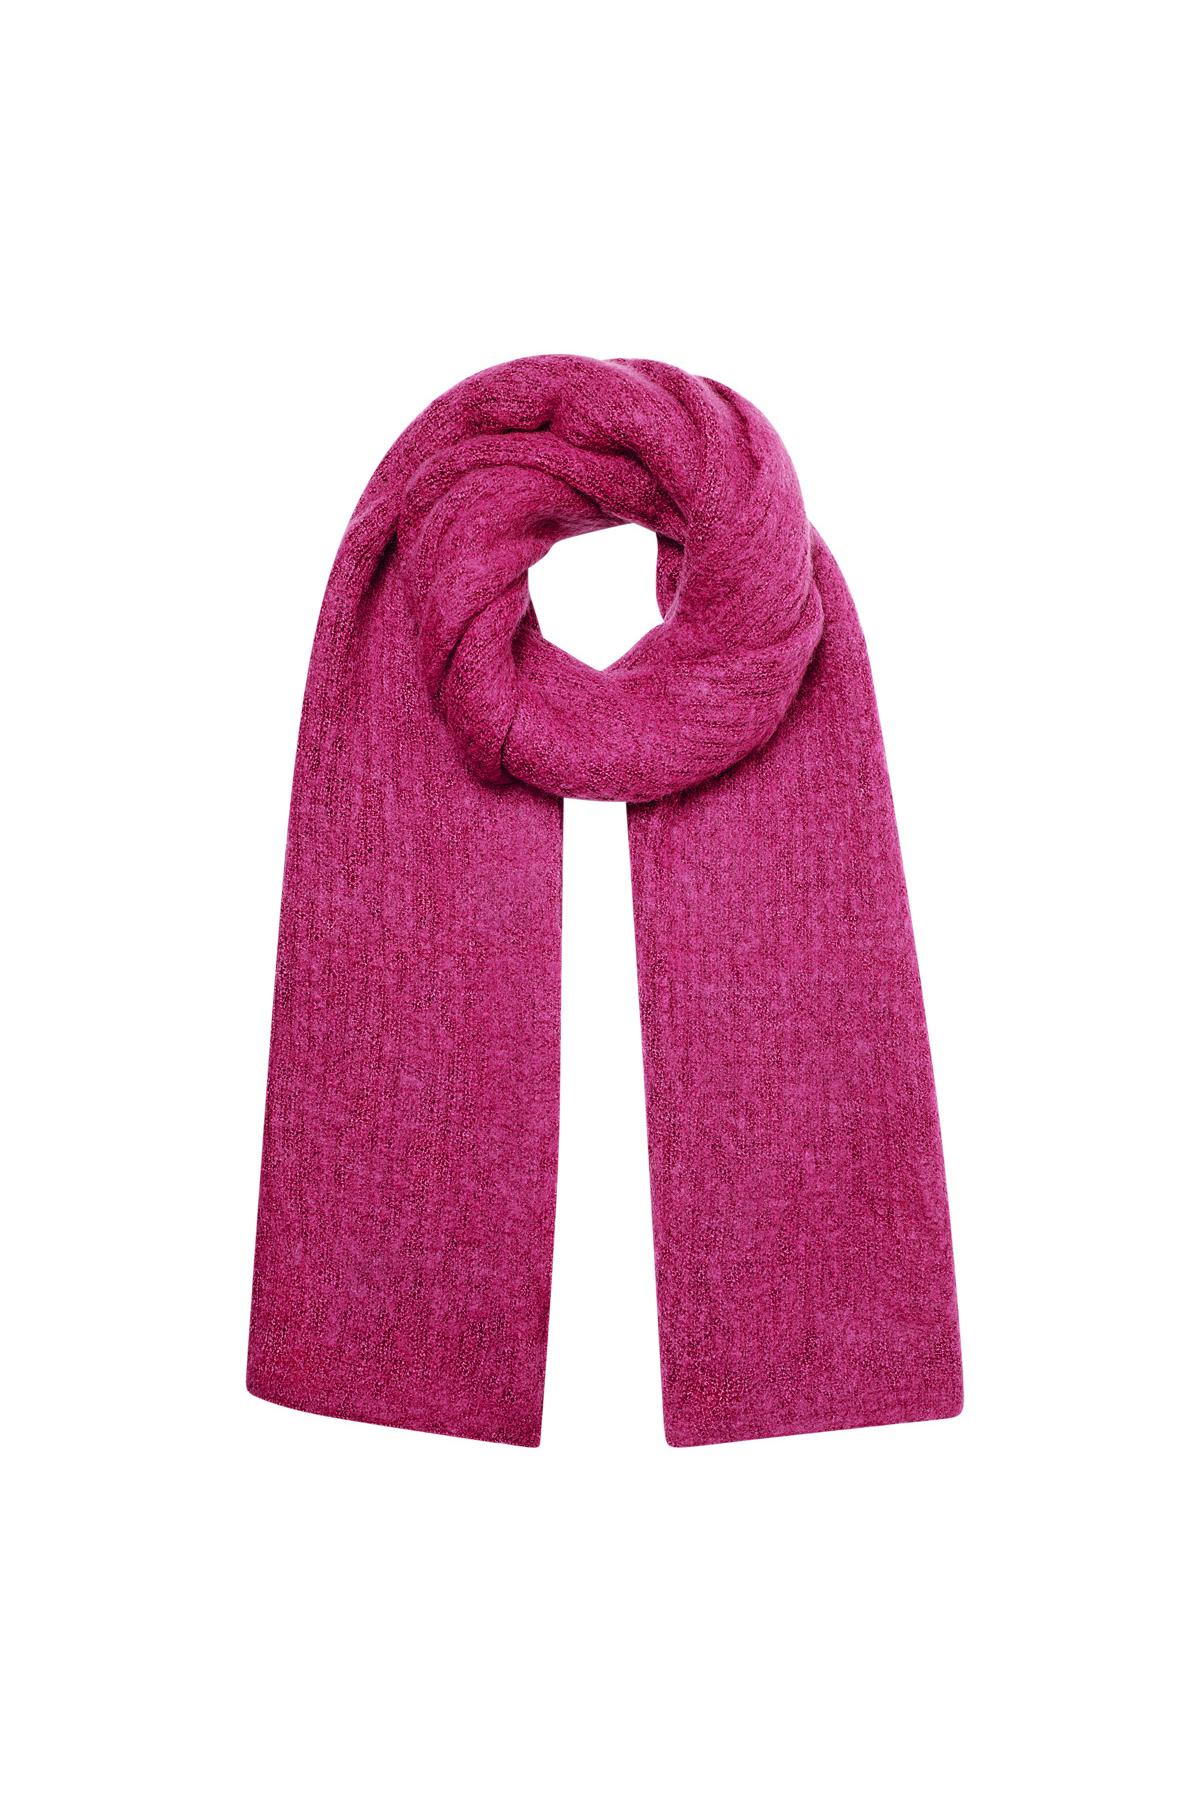 Scarf knitted plain - fuchsia